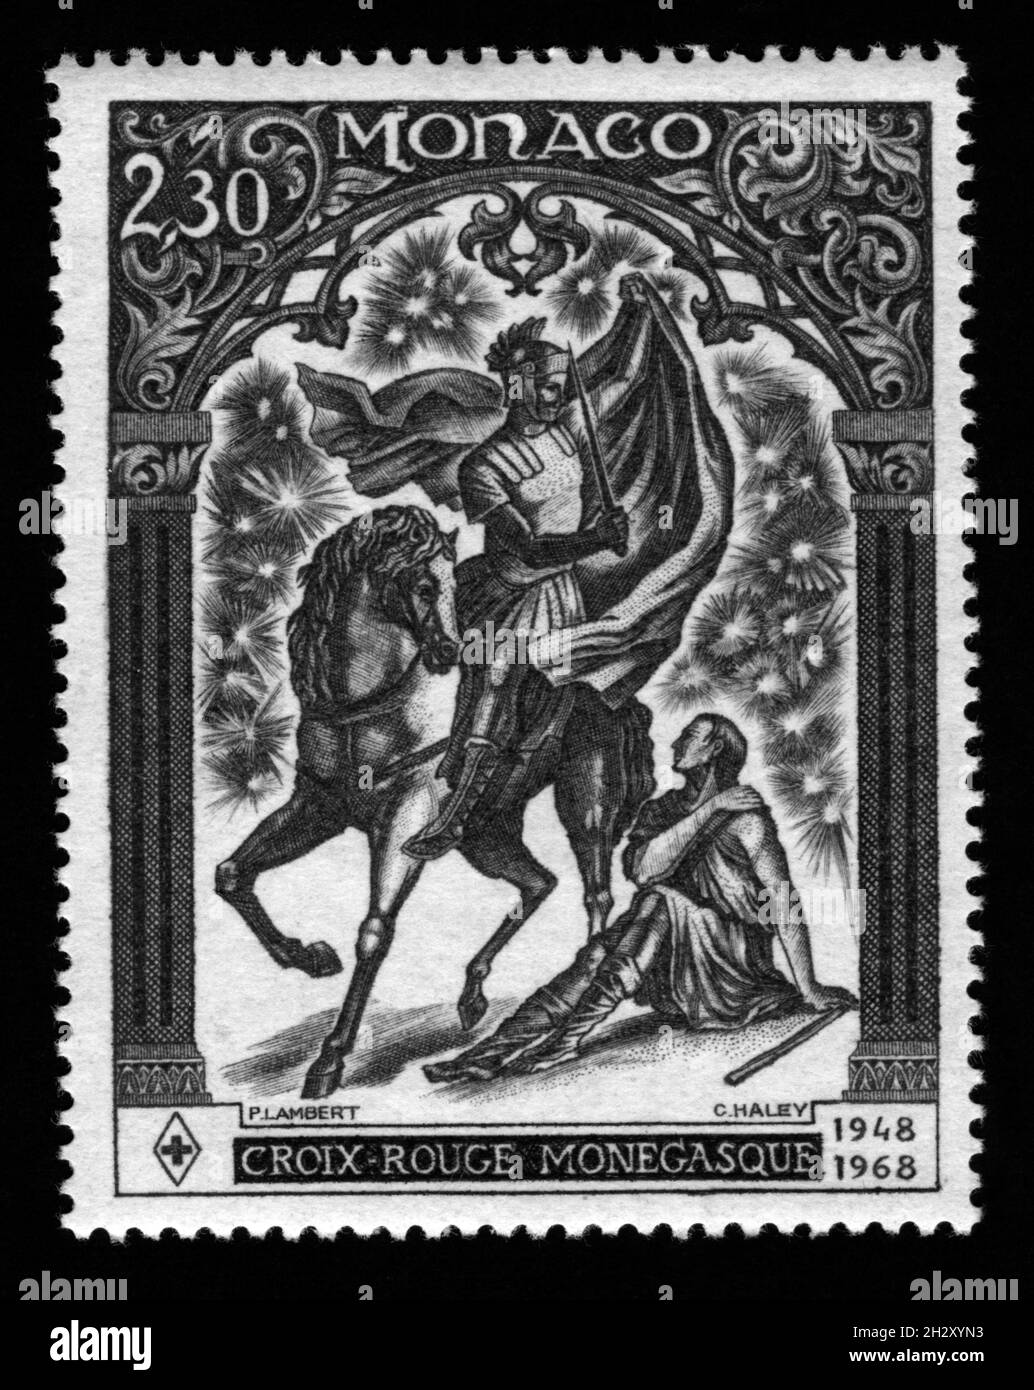 Imprimé timbres à Monaco, Croix-Rouge monégasque Banque D'Images